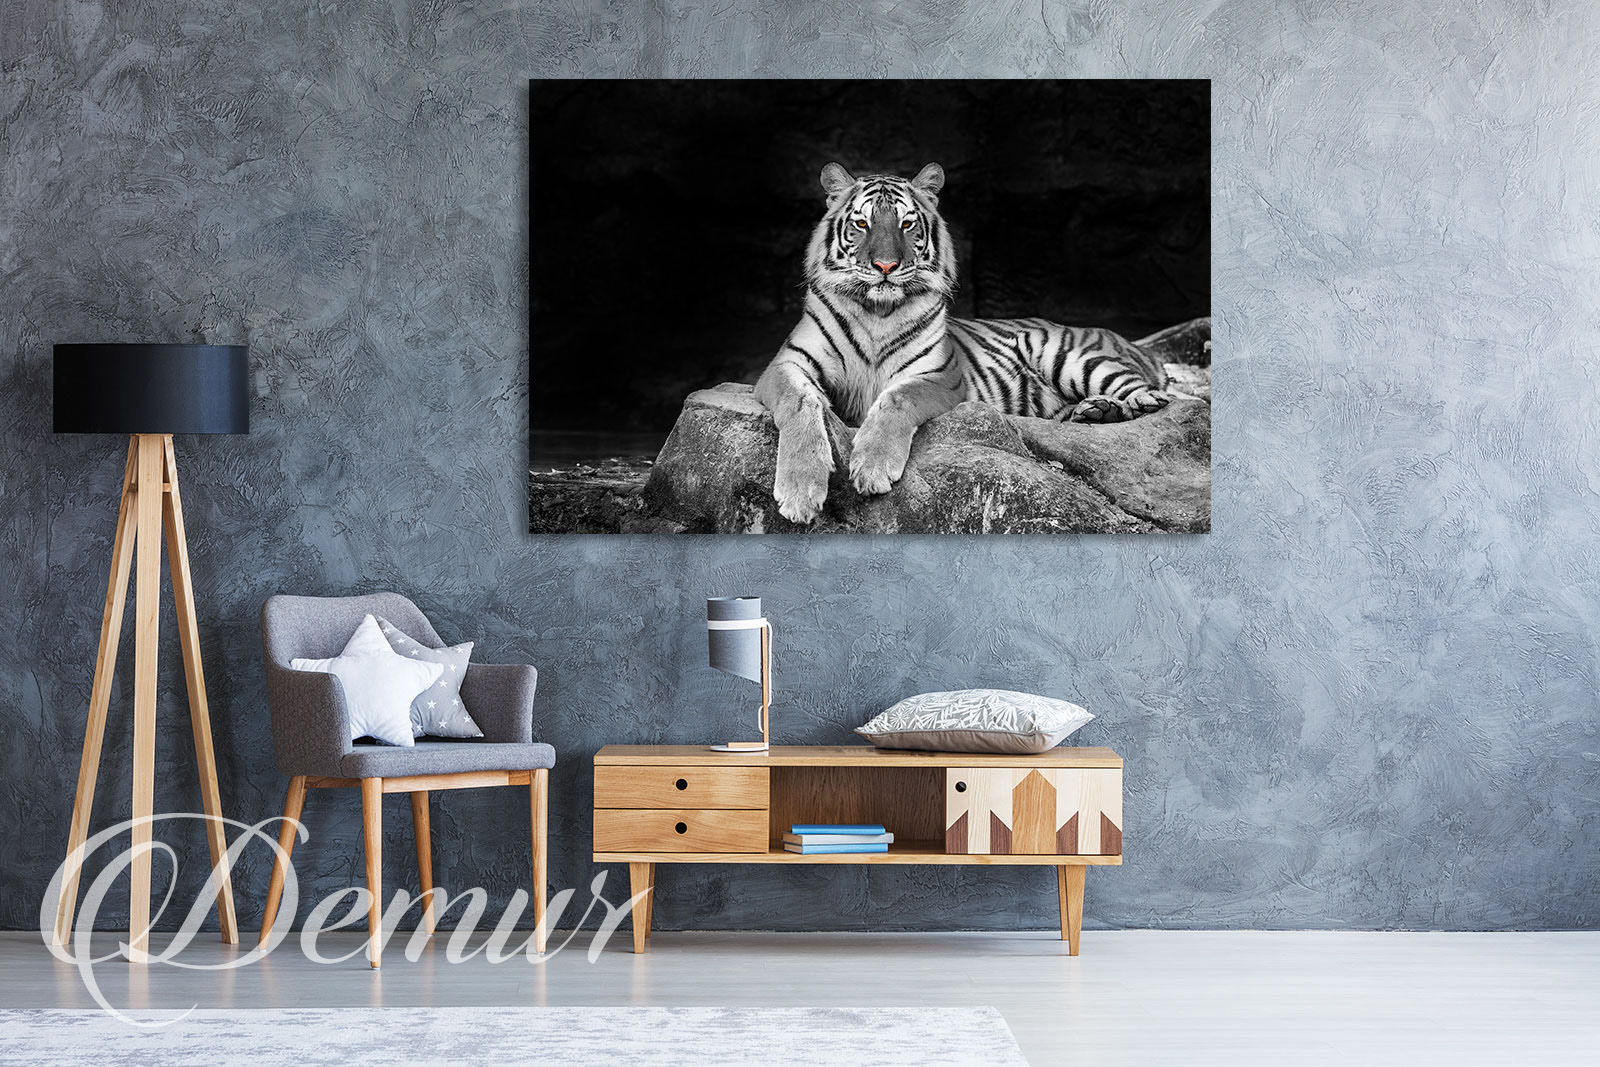 Obraz - Tygrys biało czarny - Jaki obraz do salonu - Demur